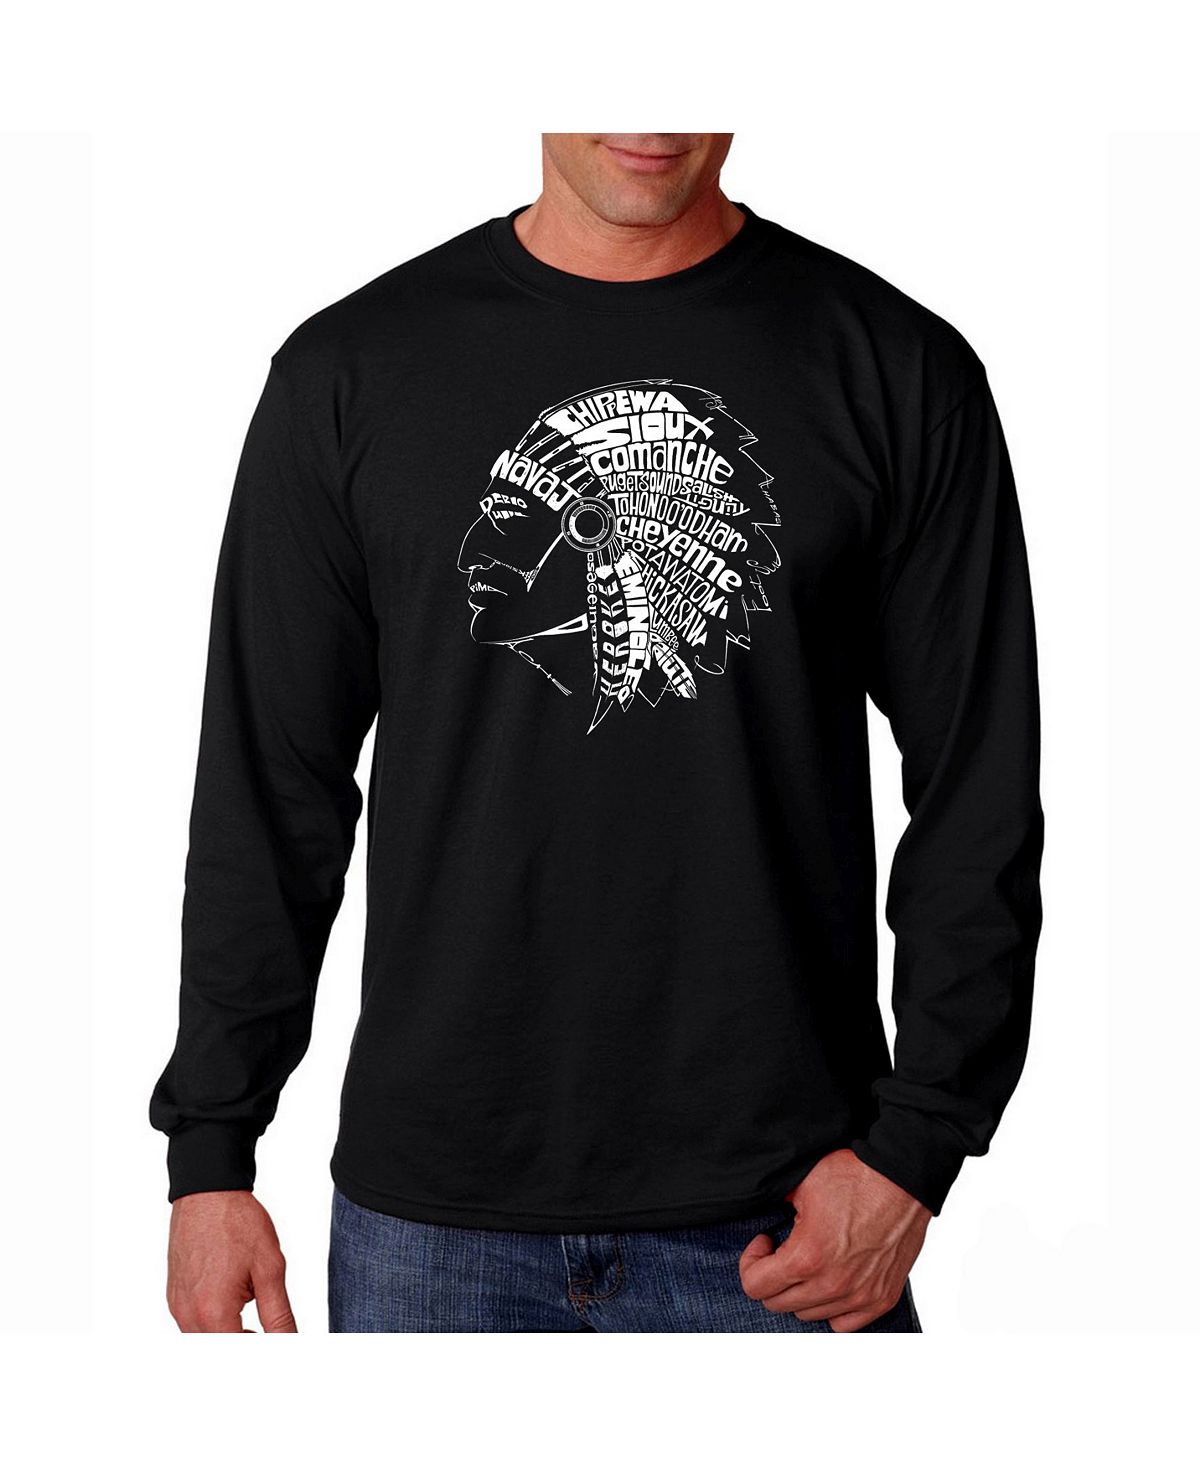 дикмар ян магия индейских племен Мужская футболка с длинным рукавом word art LA Pop Art, черный